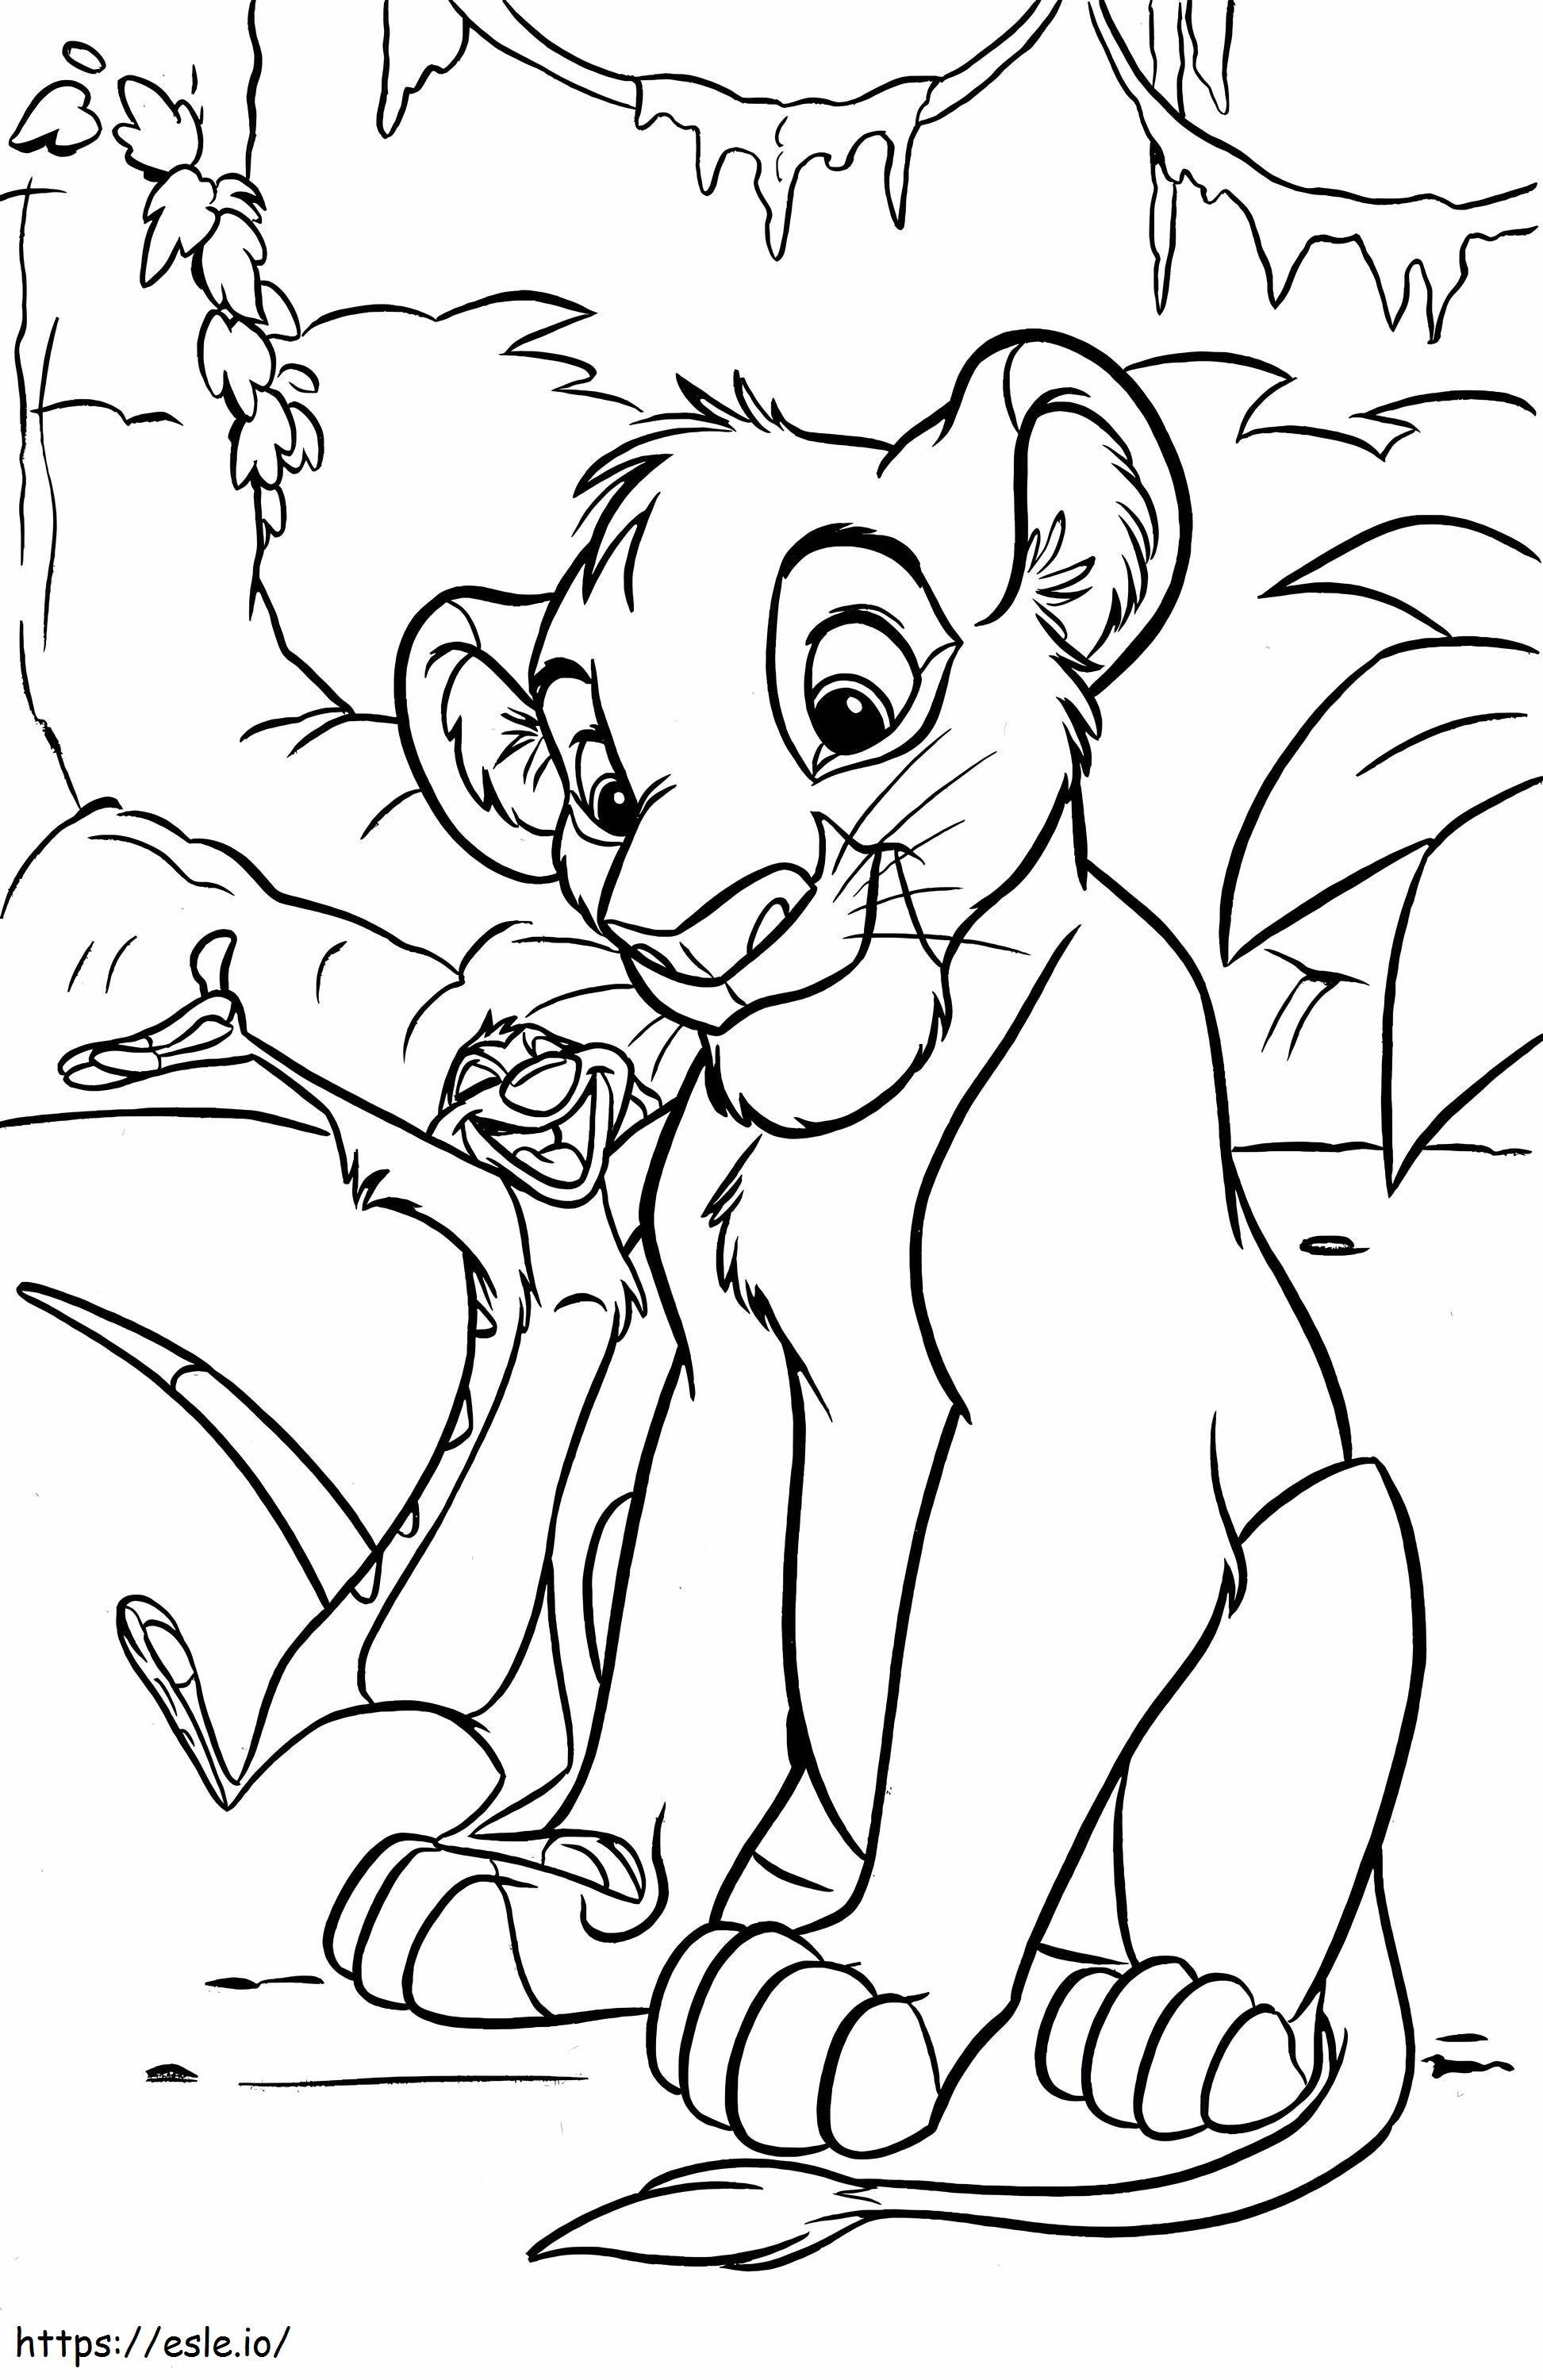 Coloriage Disney Simba et son ami à imprimer dessin